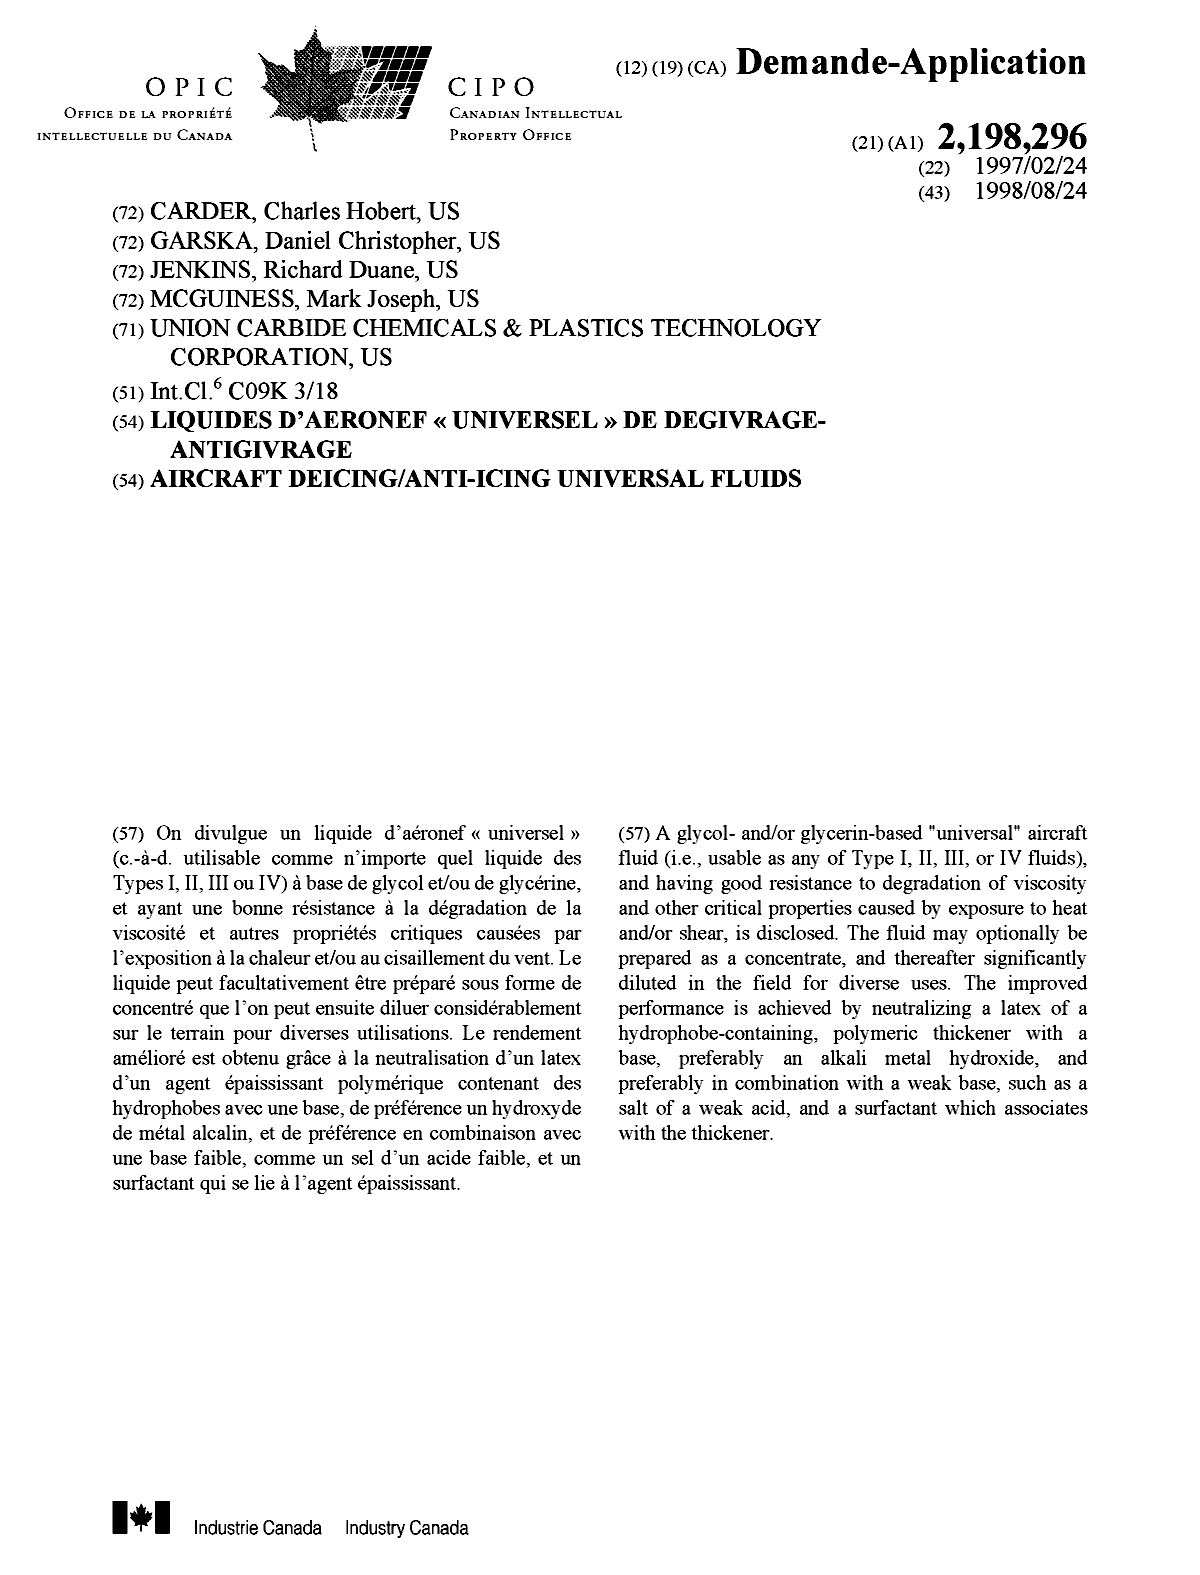 Document de brevet canadien 2198296. Page couverture 19980909. Image 1 de 1